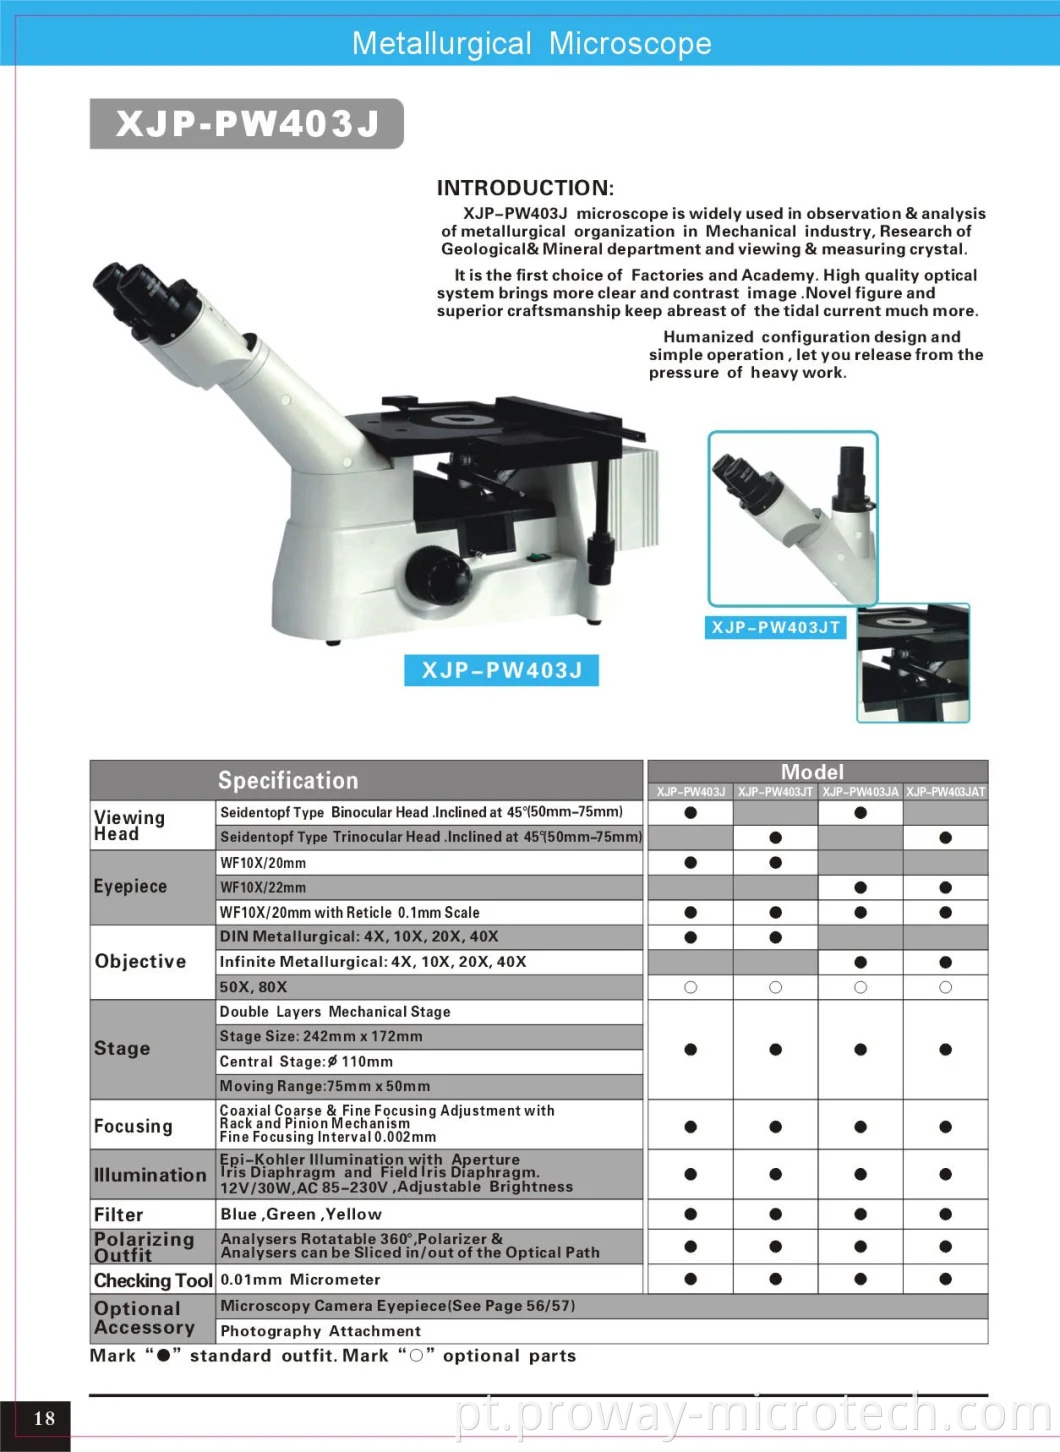 Microscópio metalúrgico invertido profissional (XJP-PW403J)